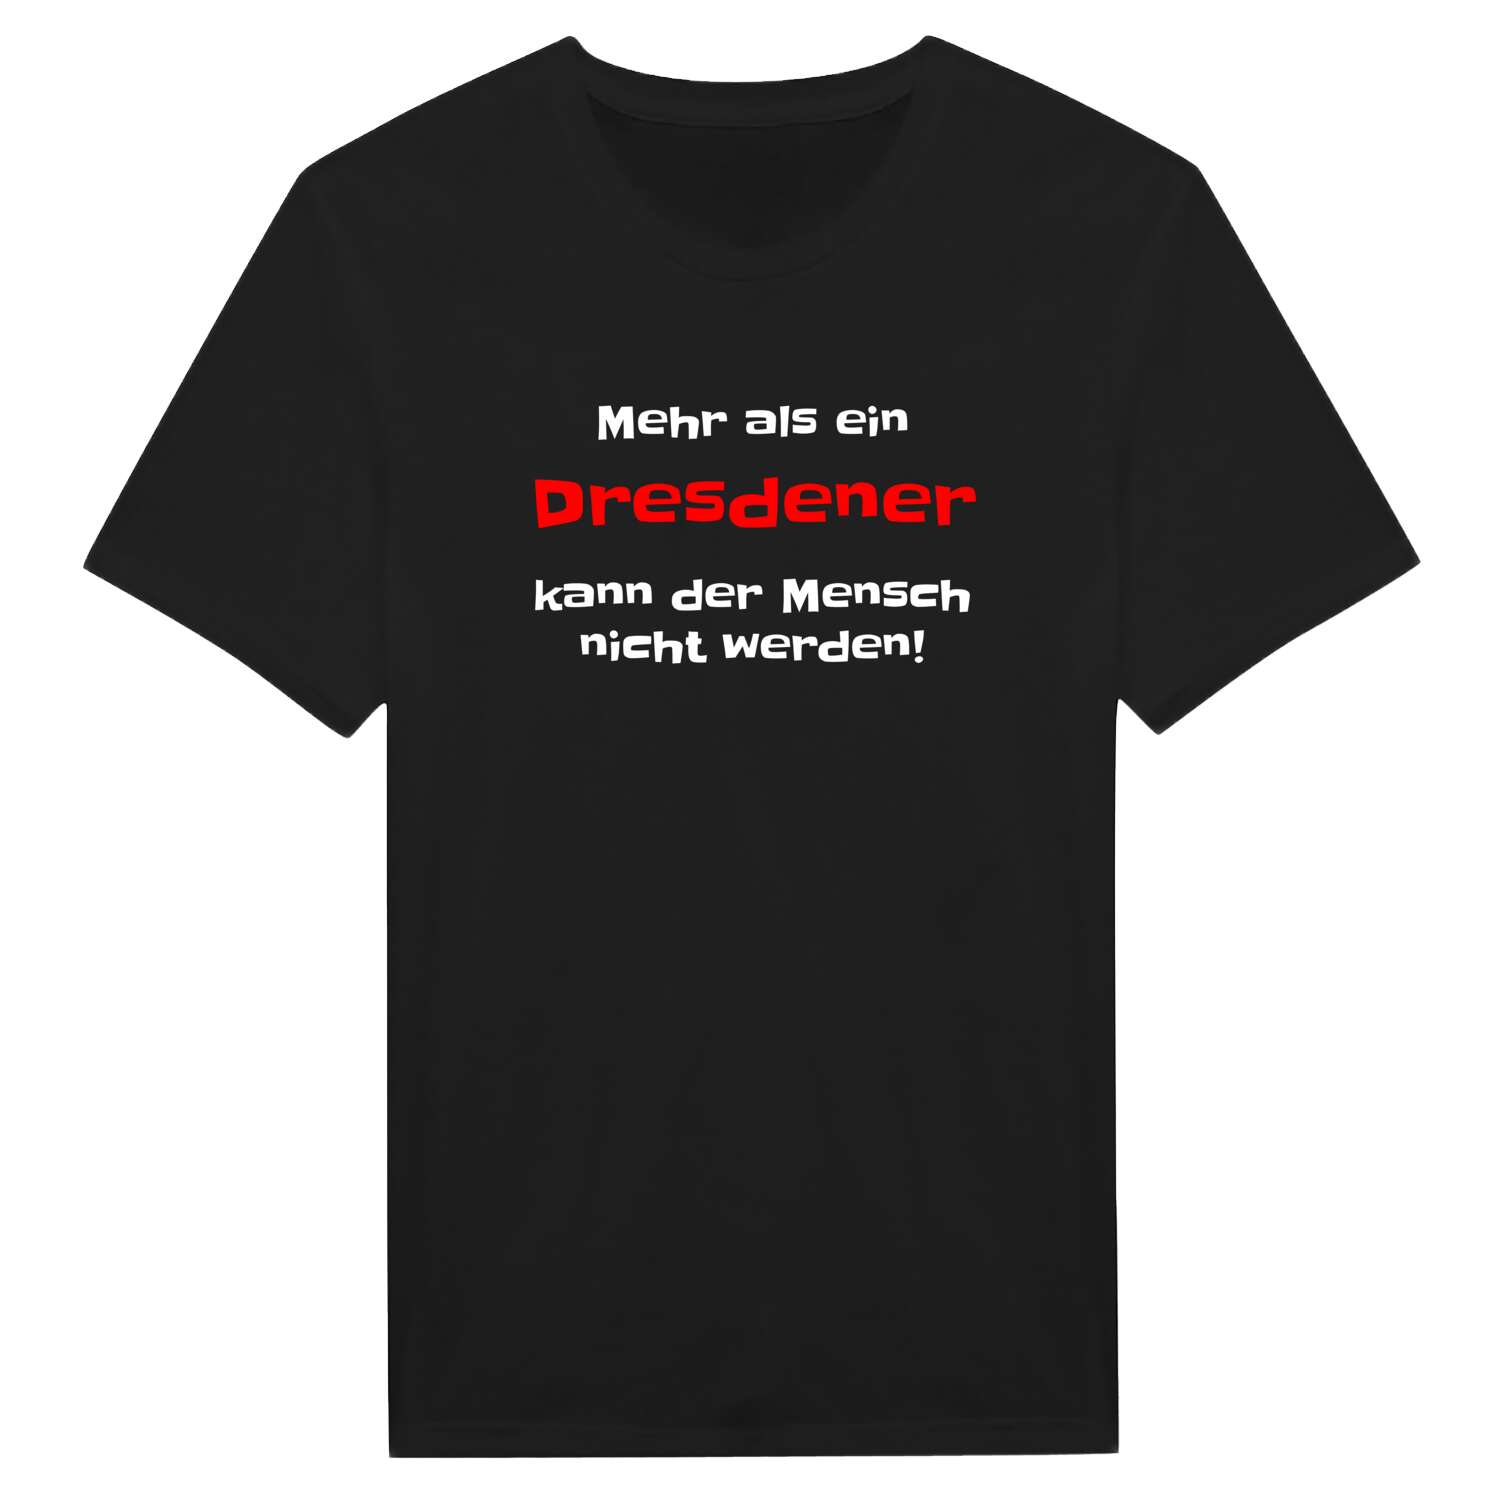 Dresden T-Shirt »Mehr als ein«